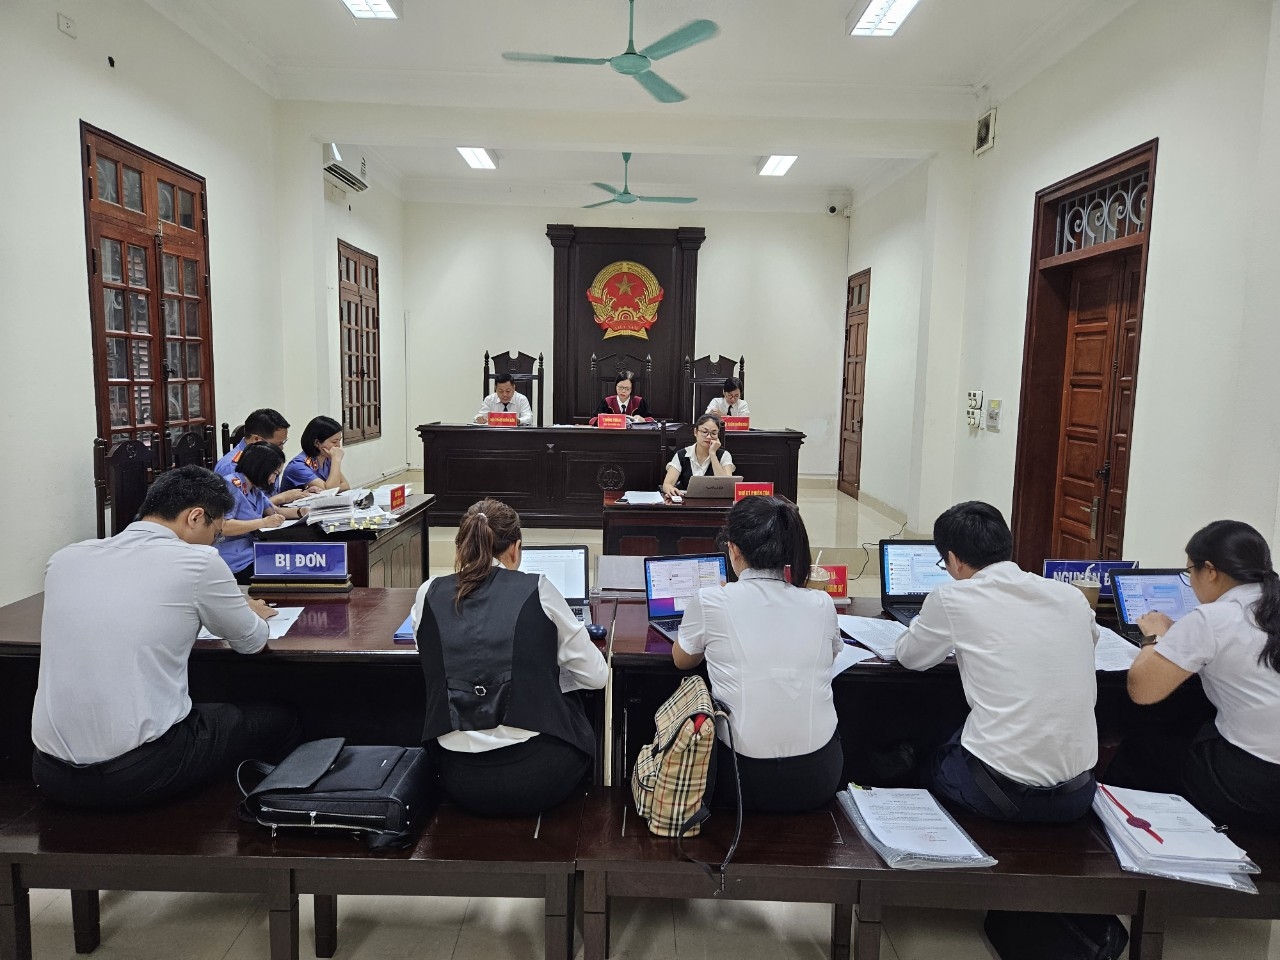 Ngày 14/9, TAND tỉnh Quảng Ninh đã mở phiên tòa xét xử vụ án dân sự Tranh chấp hợp đồng thuê và quản lý tài sản. 3 người khởi kiện Công ty FLC Hạ Long 